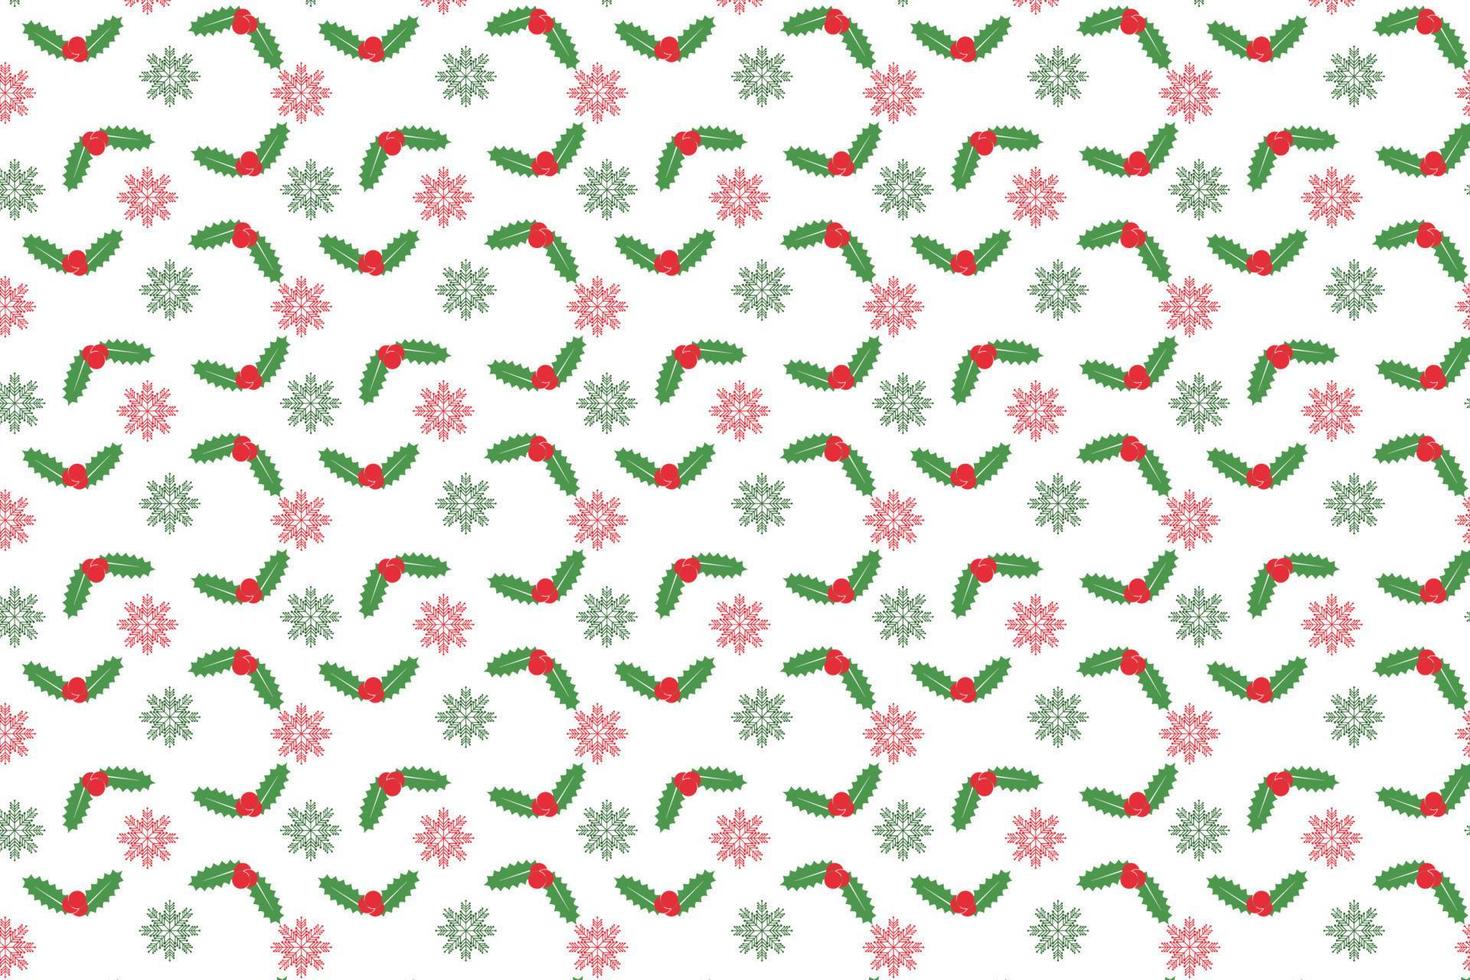 abstrakter Weihnachtsmustervektor mit grünen Blättern und roten Kirschen. weihnachtsgeschenkpapier und bucheinbanddekorationsmusterdesign. minimales weihnachtsmuster auf weißem hintergrund mit schneeflocken vektor